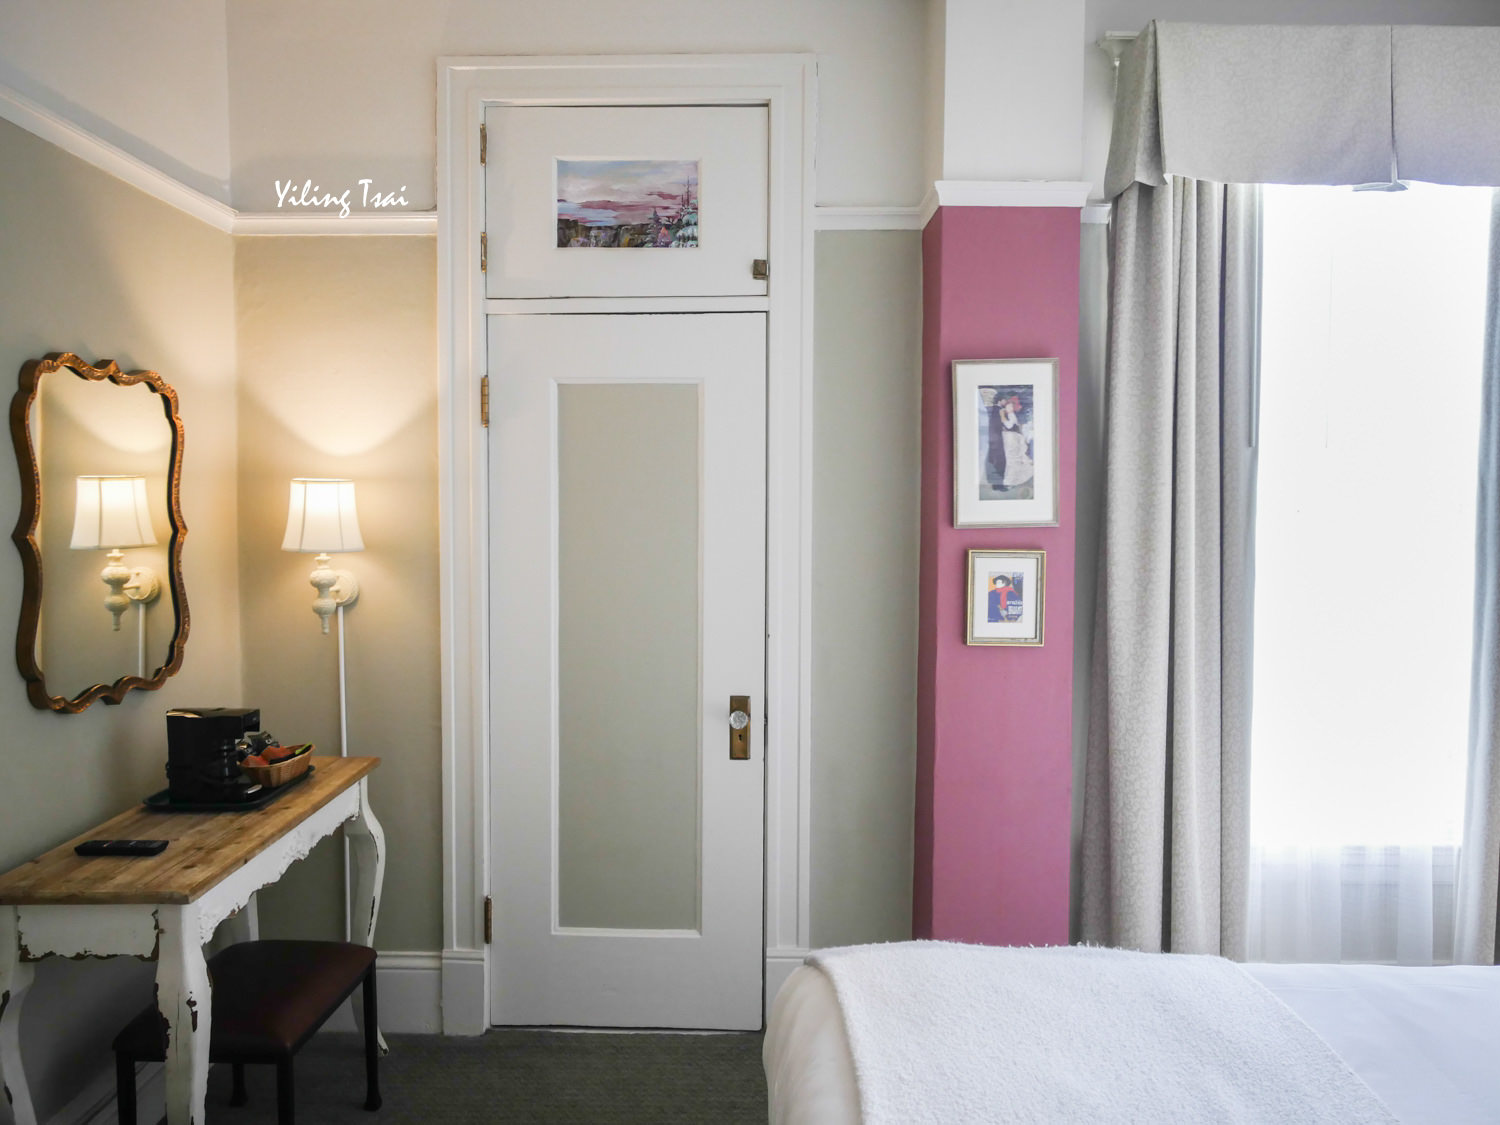 美國舊金山住宿推薦 Cornell Hotel de France 法式風格質感三星飯店